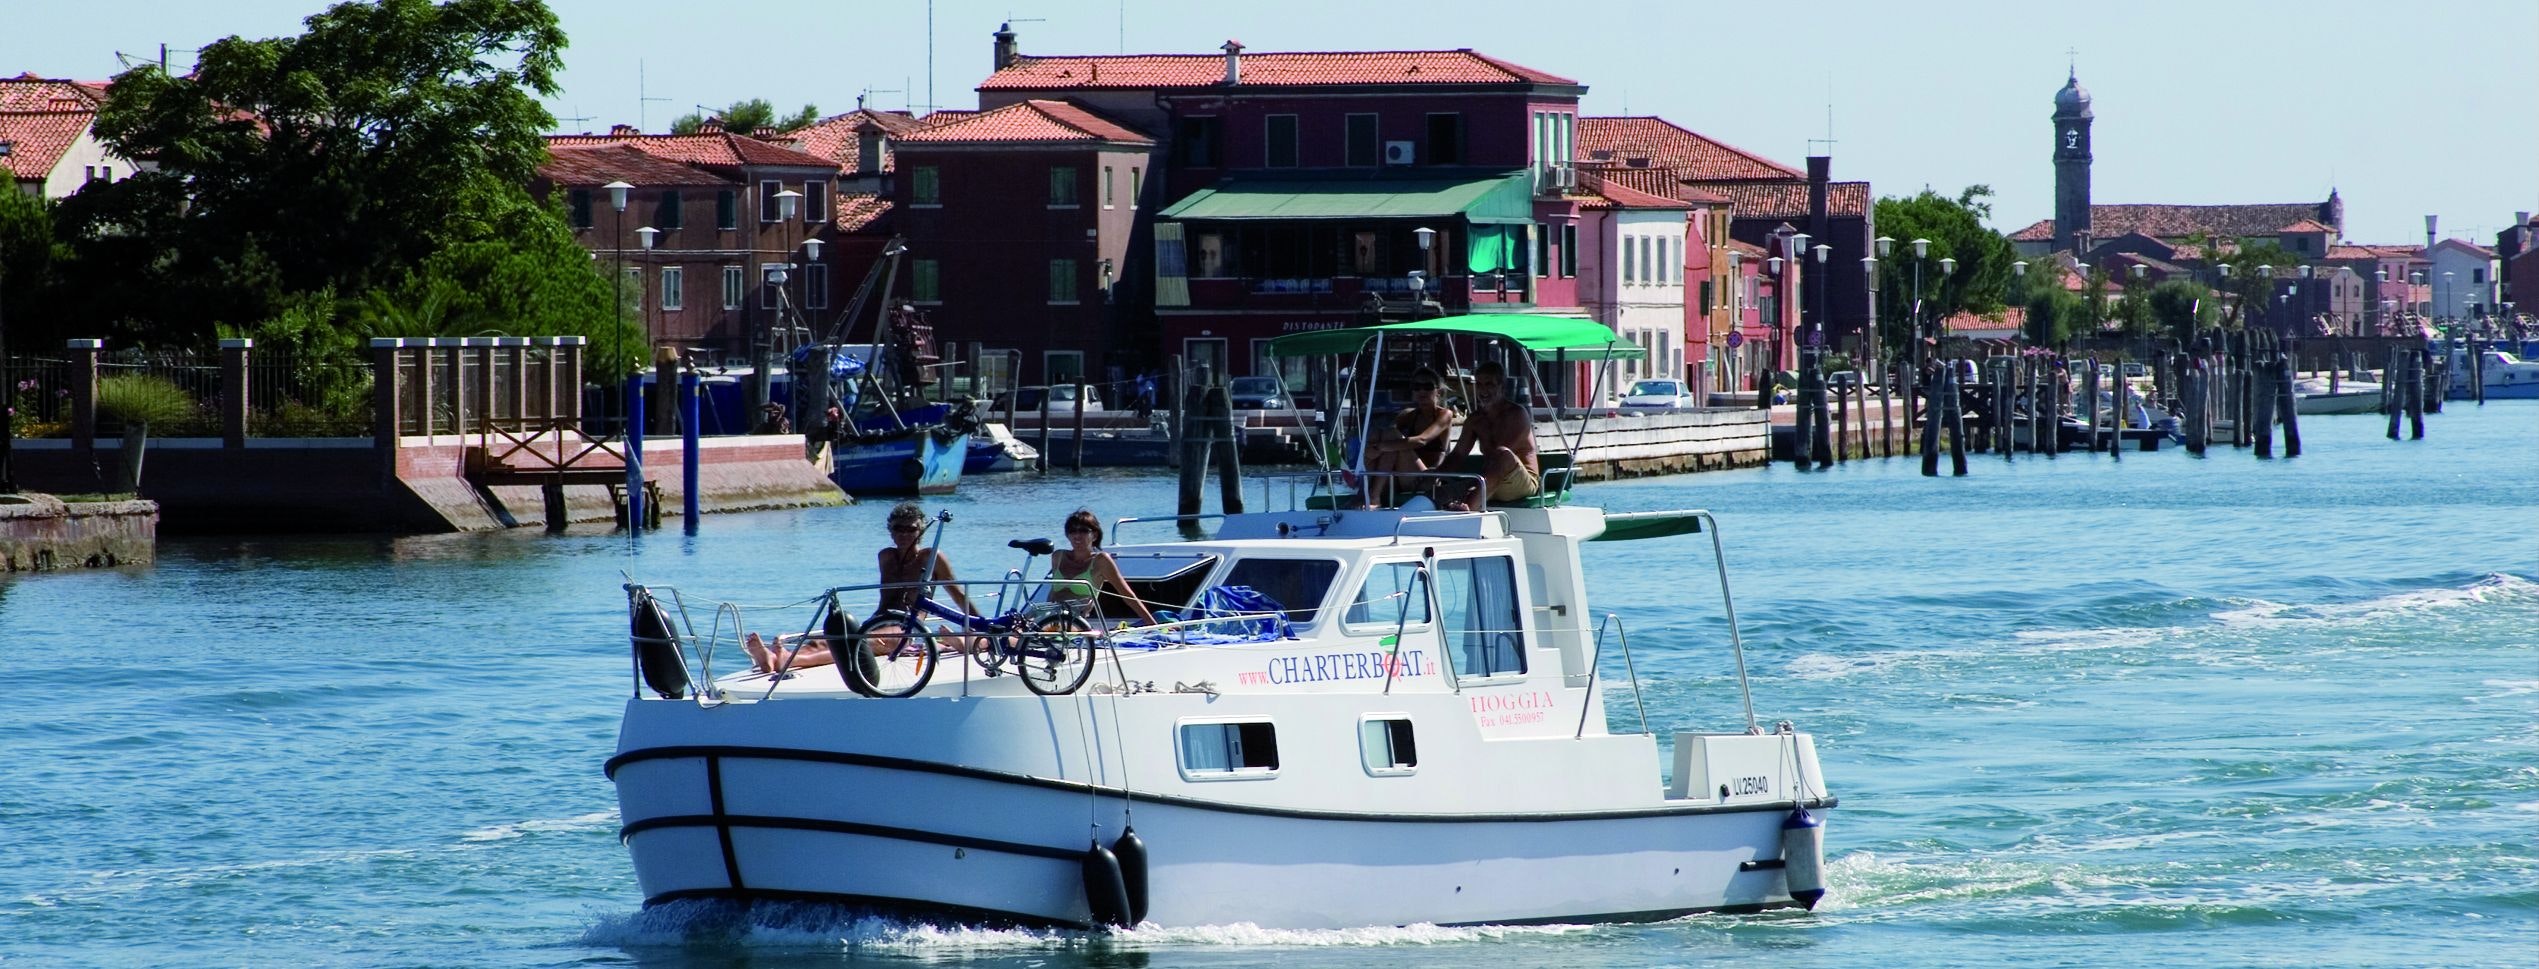 Ljudje na krovu hišnega čolna v Beneški laguni